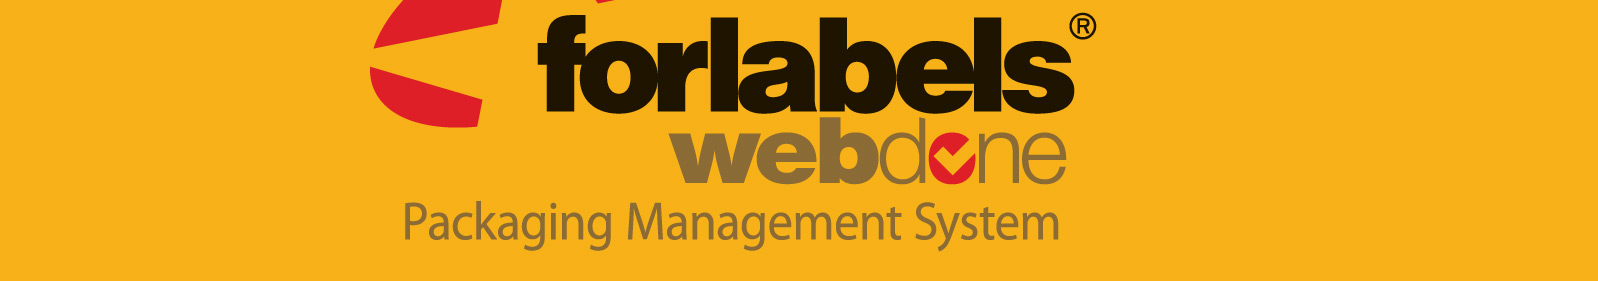 WEBDONE - Ηλεκτρονικό σύστημα διαχείρισης ηλεκτρονικών αρχείων γραφικών WEBDONE